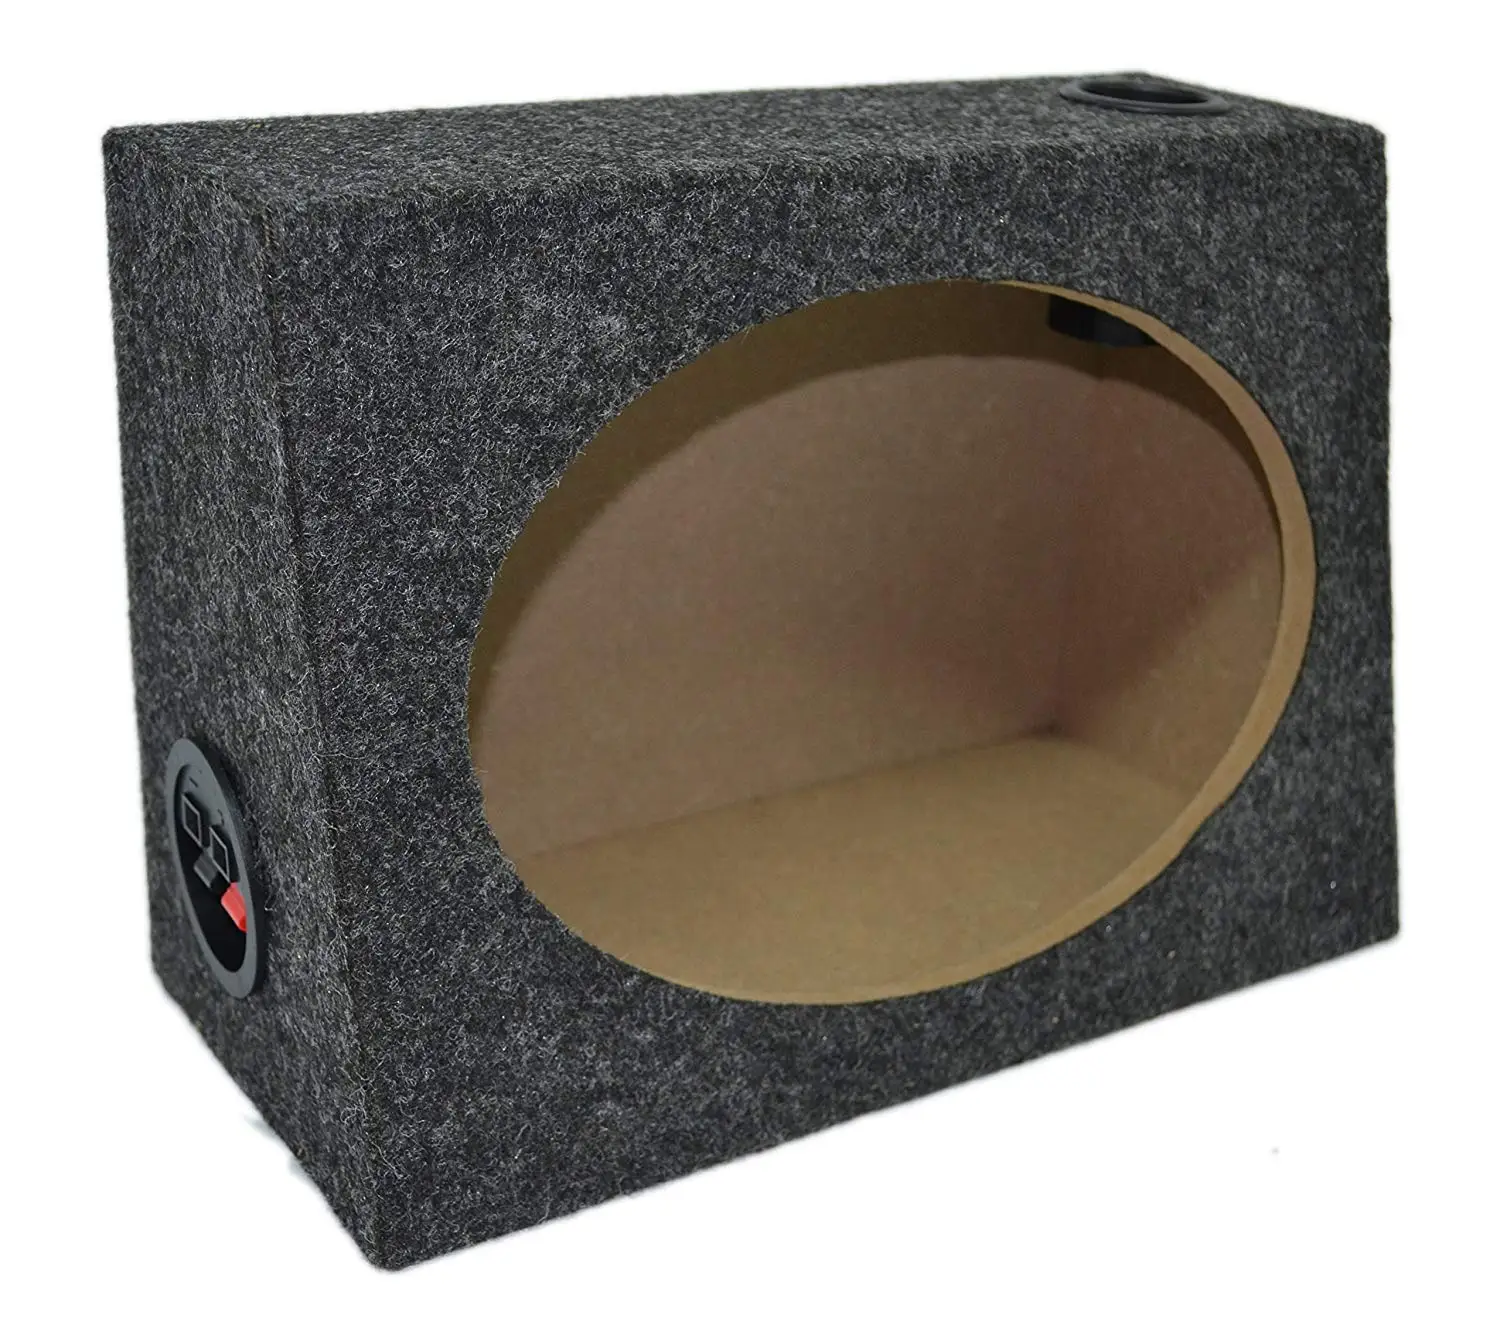 6x9 car speaker enclosure design